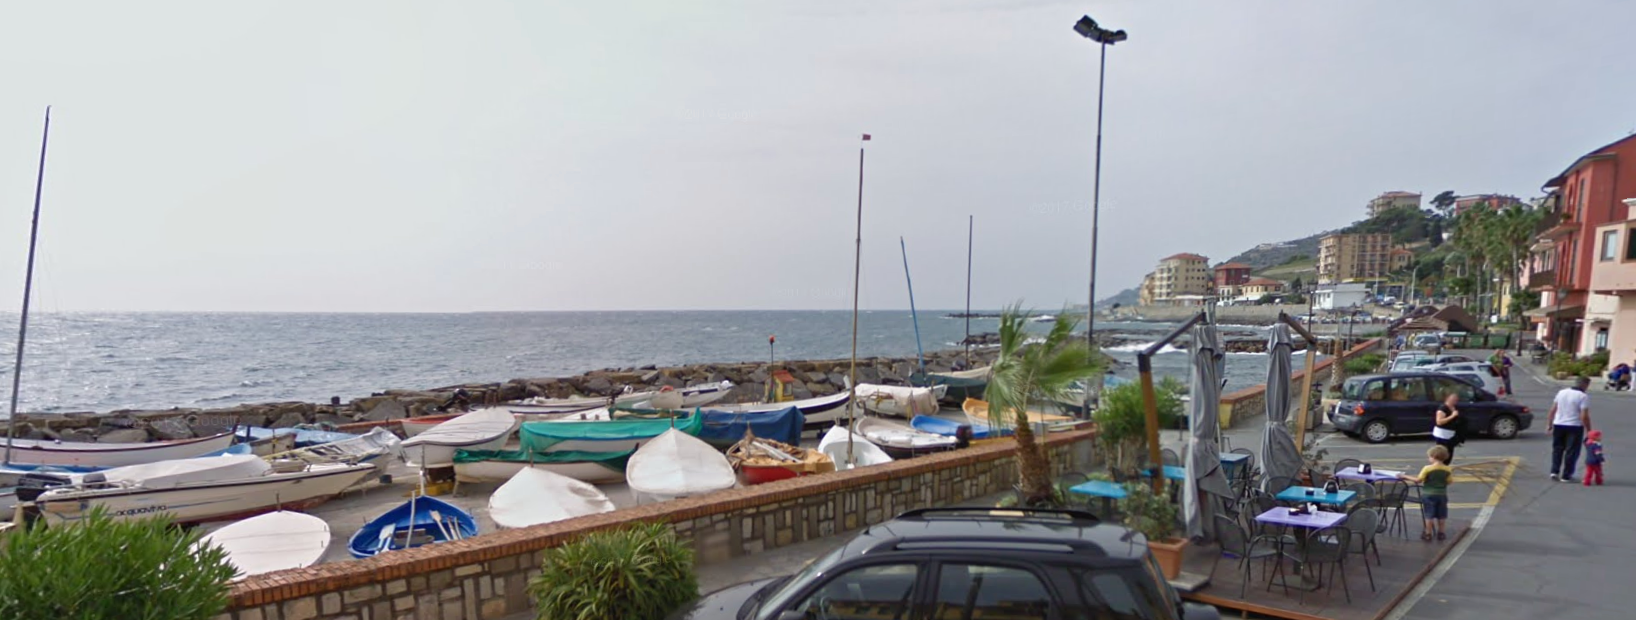 Porto Maurizio by Google Earth